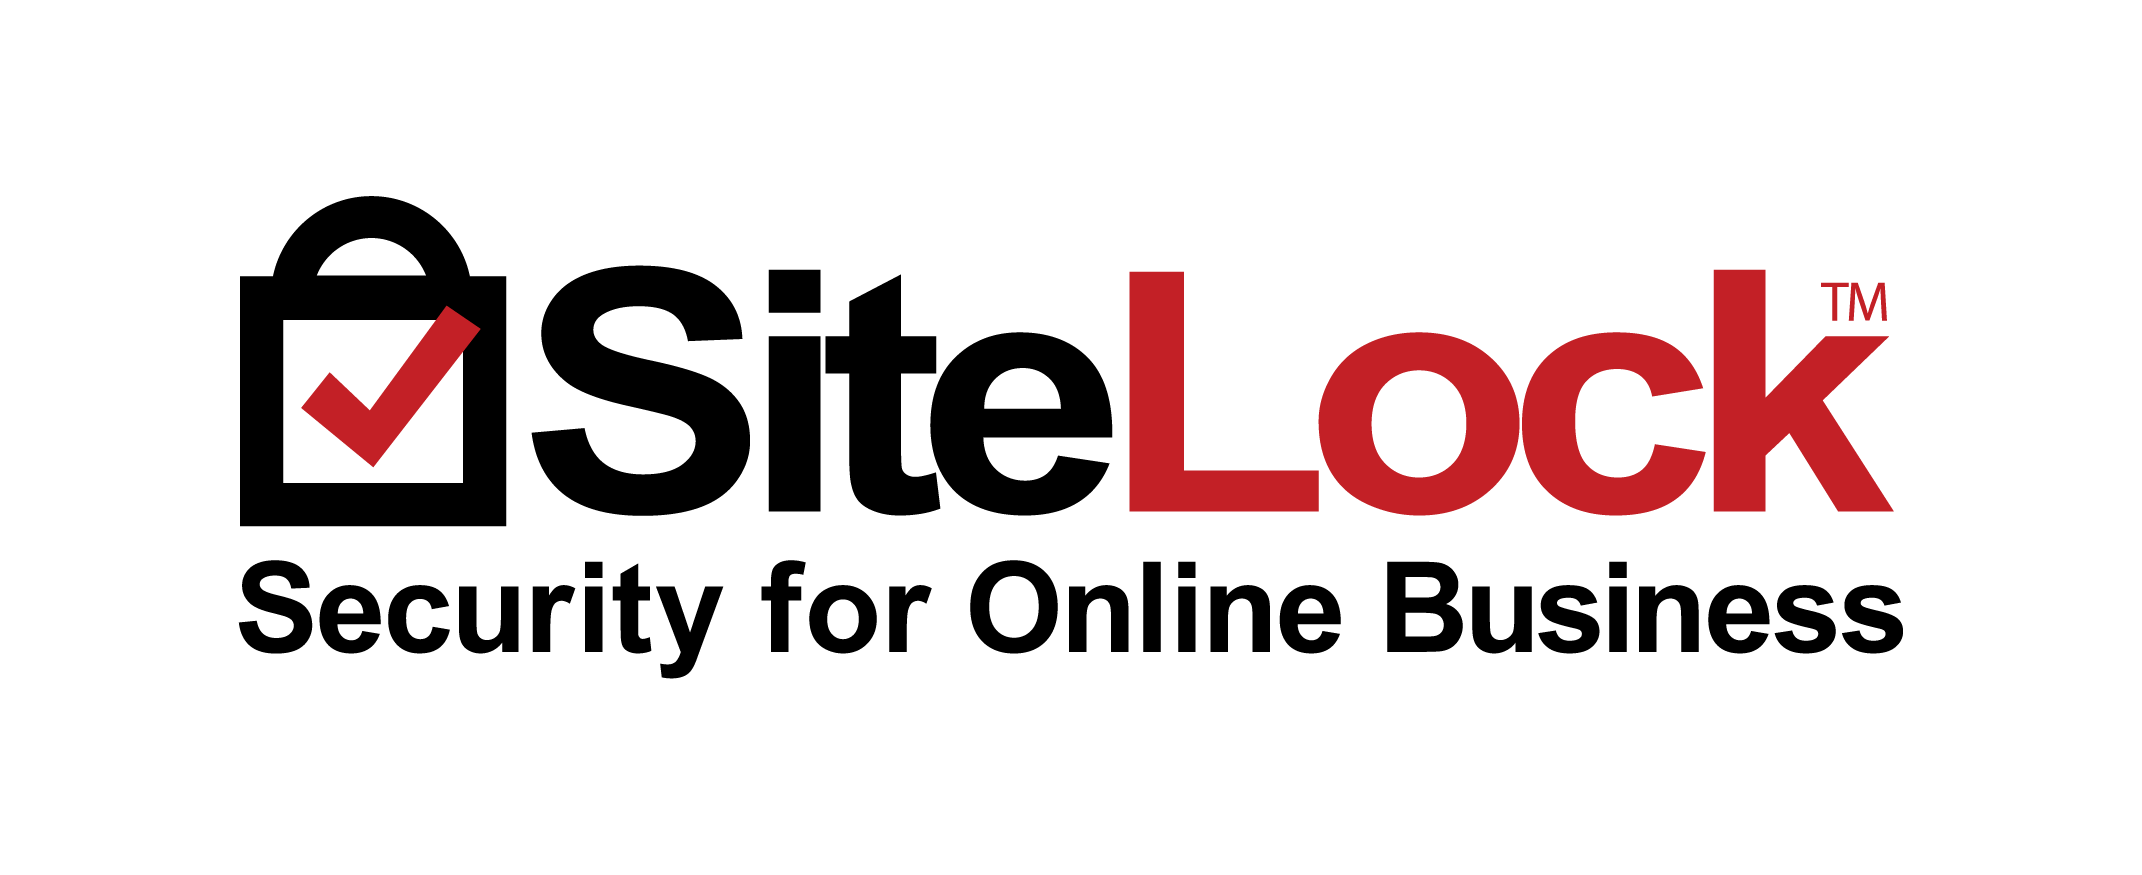 Secure Website Logo - Sitelock vs Trust Guard's PCI compliance service